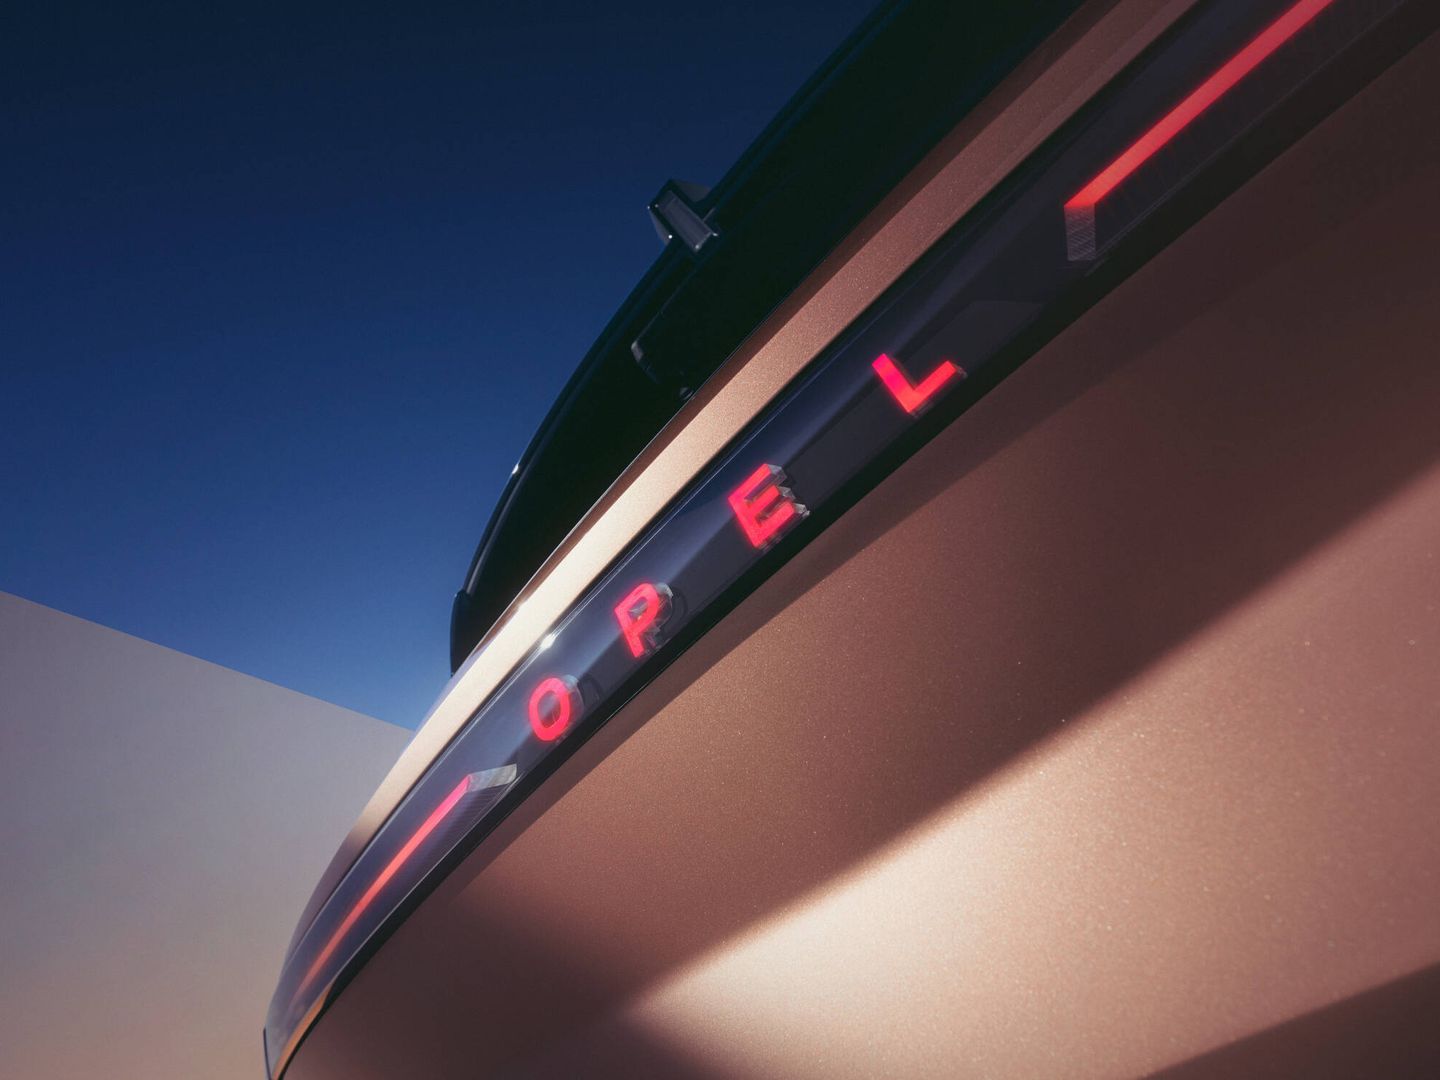 Como primicia en la marca, las letras Opel están iluminadas permanentemente en la trasera.